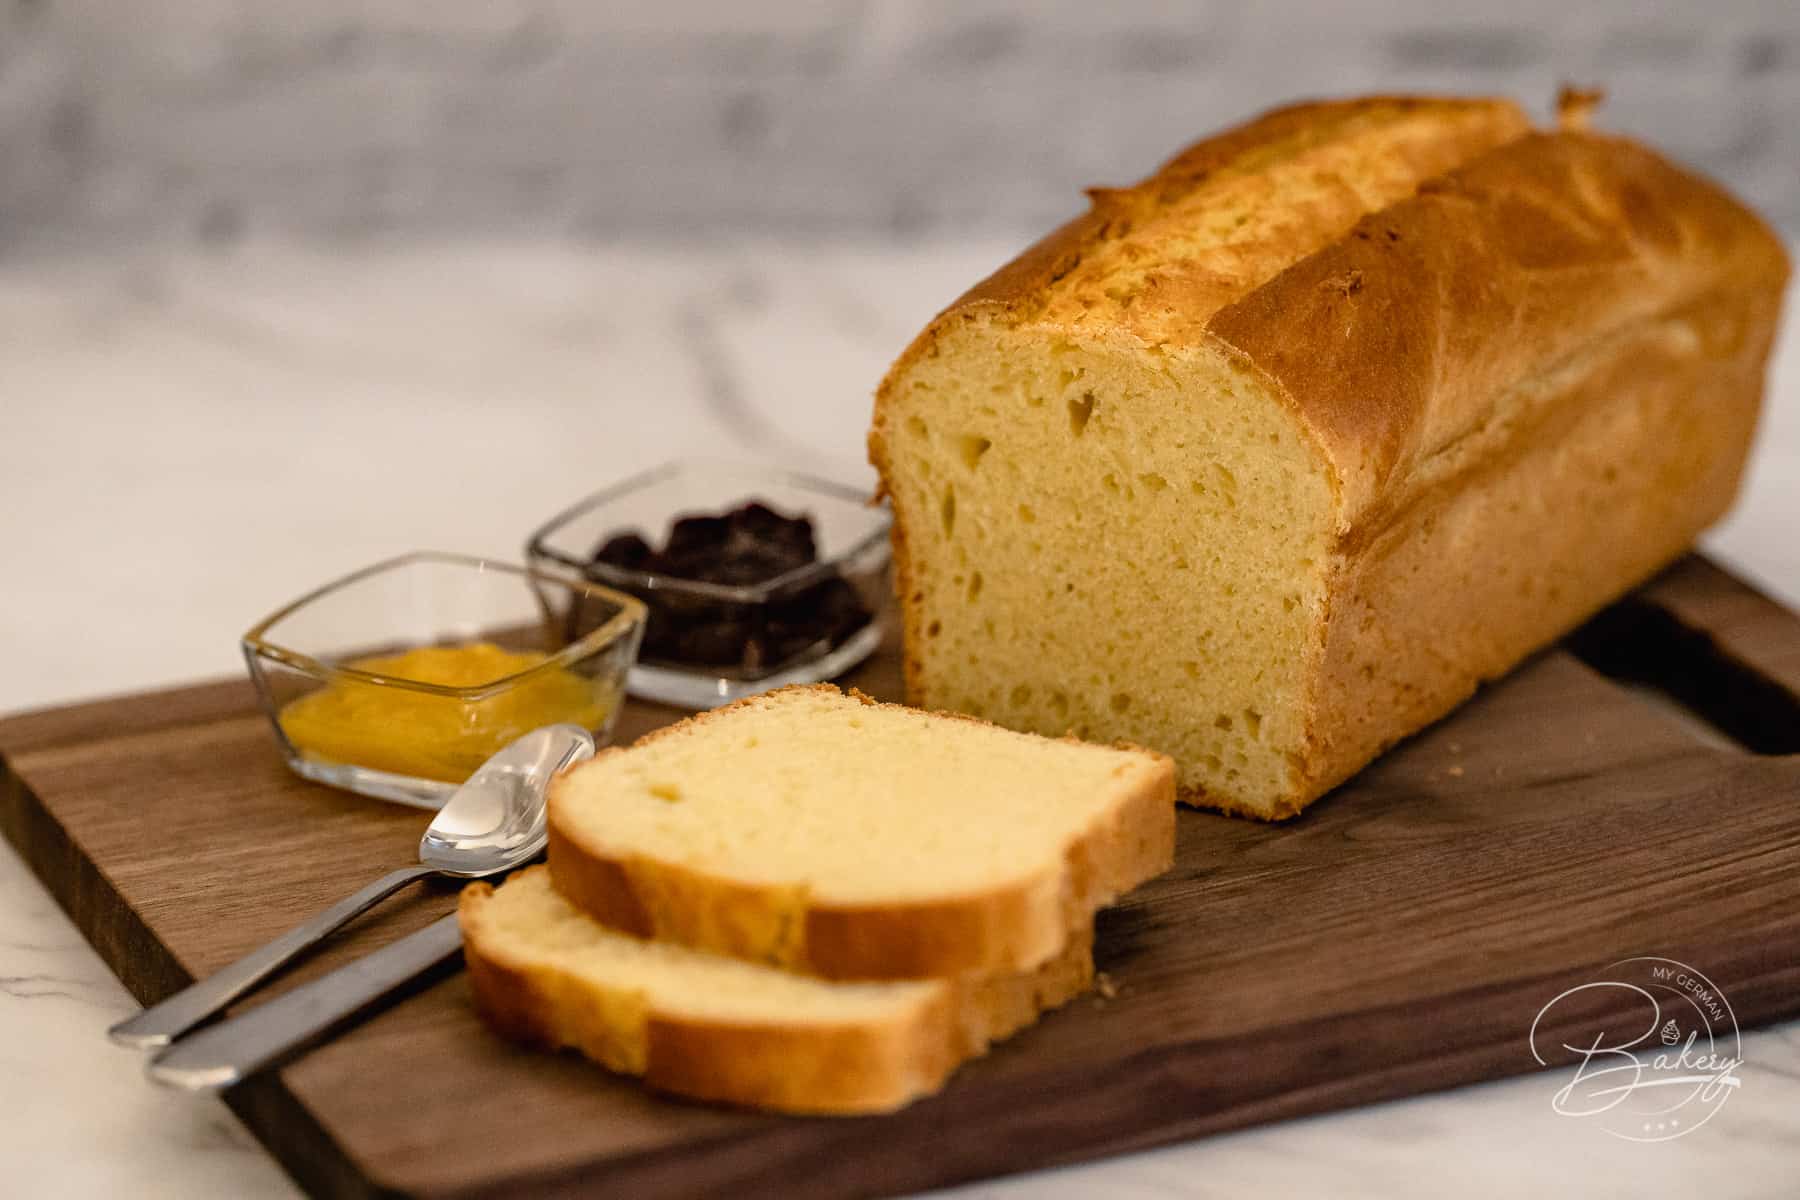 Einfacher süßer Stuten - gelingt immer - wie beim Bäcker - frisch selbst gebacken - Sonntagsfrühstück - Stuten und süßes Weißbrot